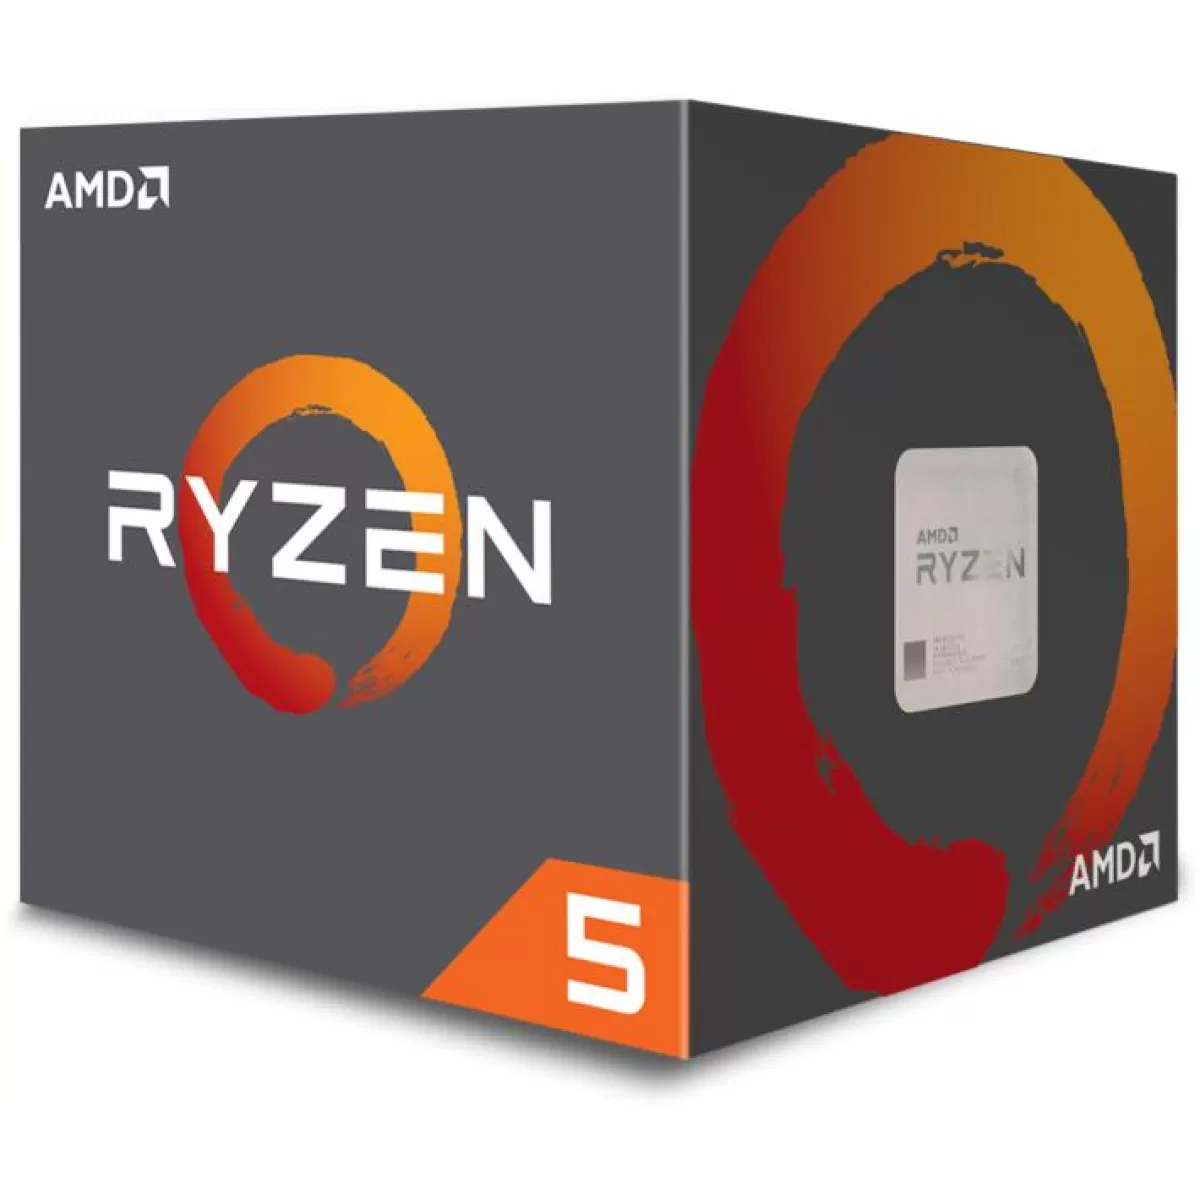 Процесор AMD RYZEN 5 1600 3.2GHZ TRAY